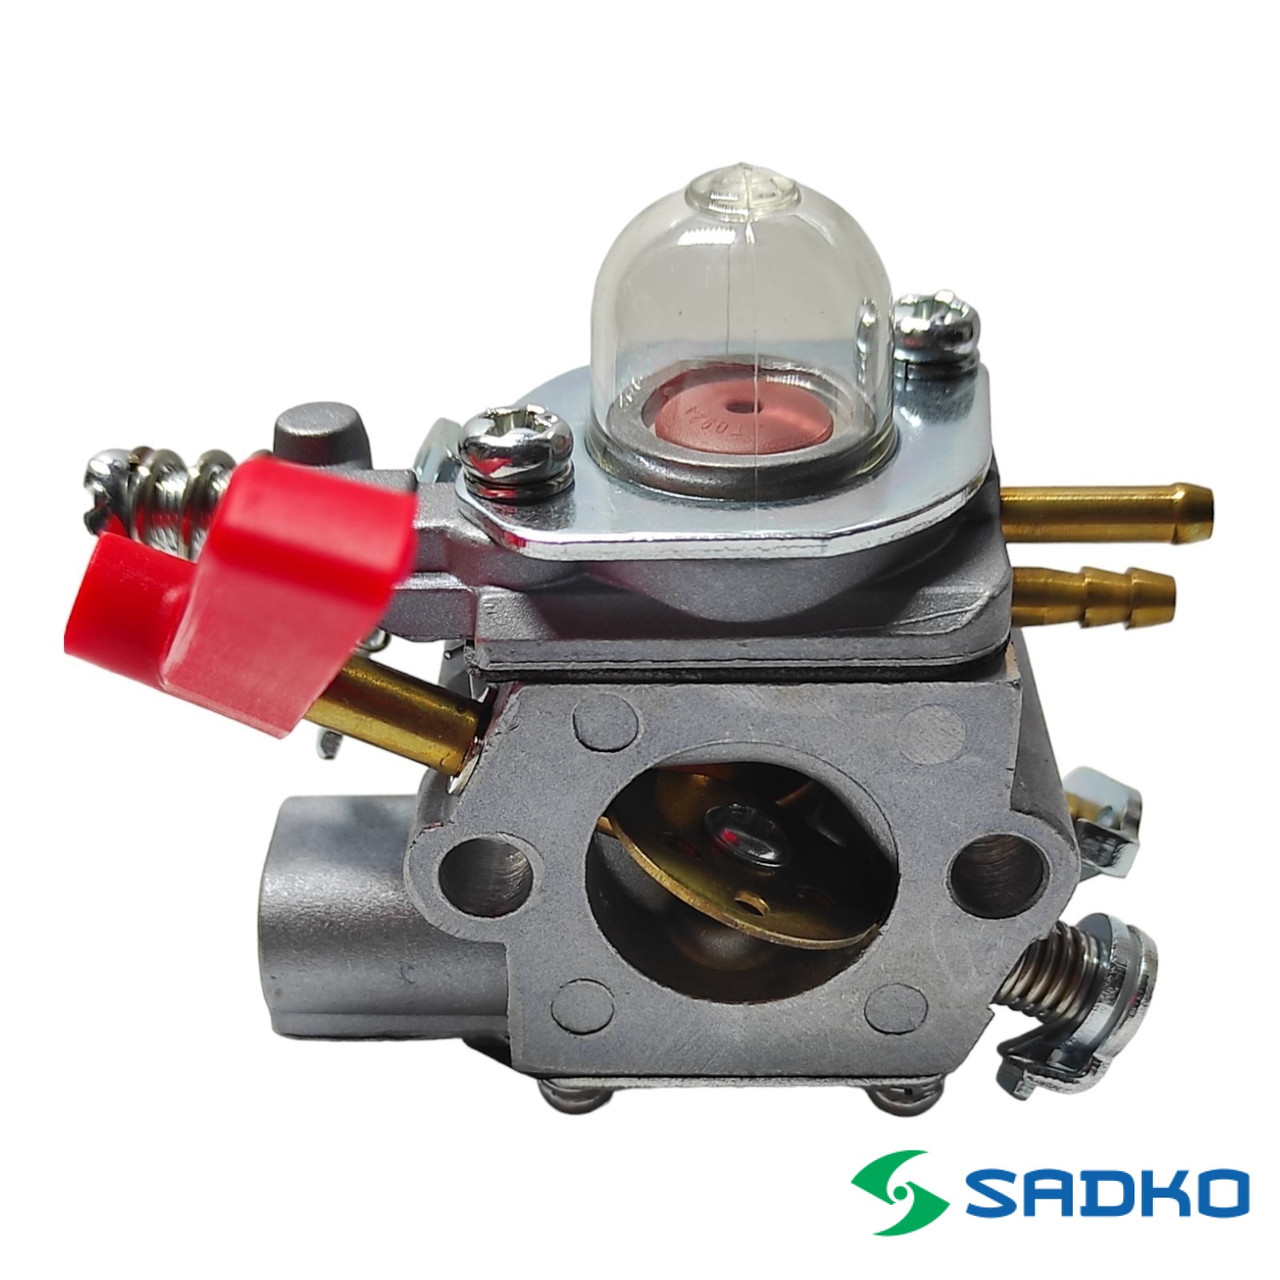 Карбюратор Sadko GTR-2200Pro, GTR-2800Pro, GTR 430N для бензокосами Sadko